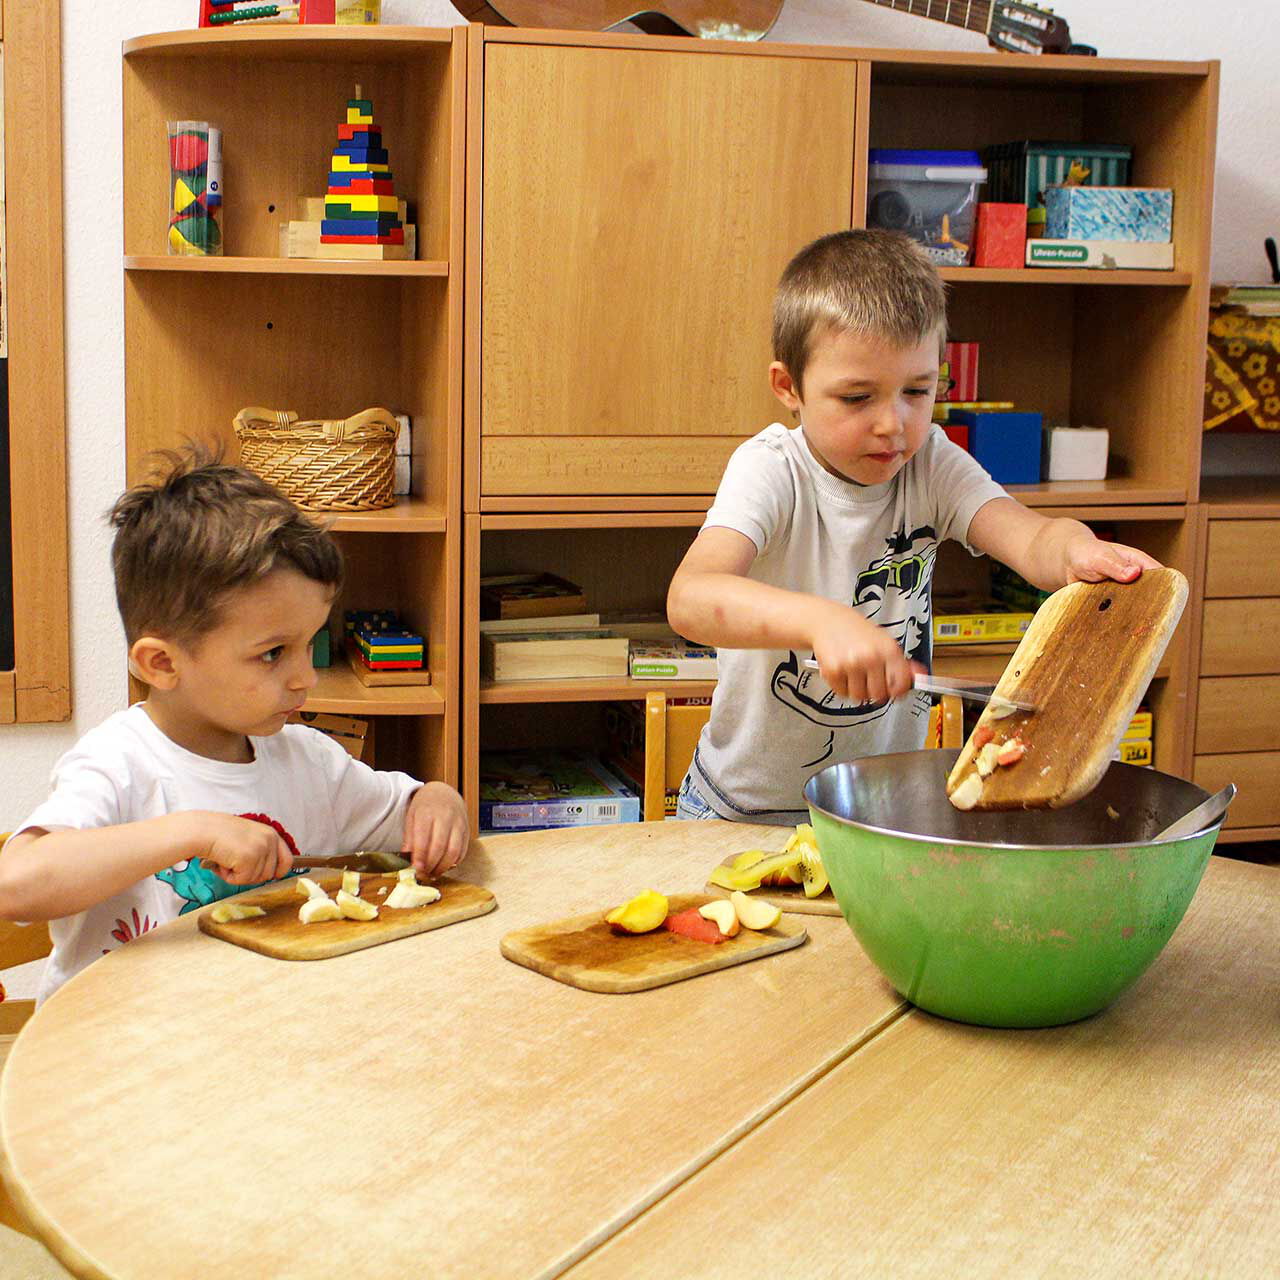 Zwei Jungs sitzen an einem Tisch und bereiten einen Obstsalat zu. Ein Junge schneidet einen Apfel und der andere schüttet seine Apfelstücke in eine große Schüssel.